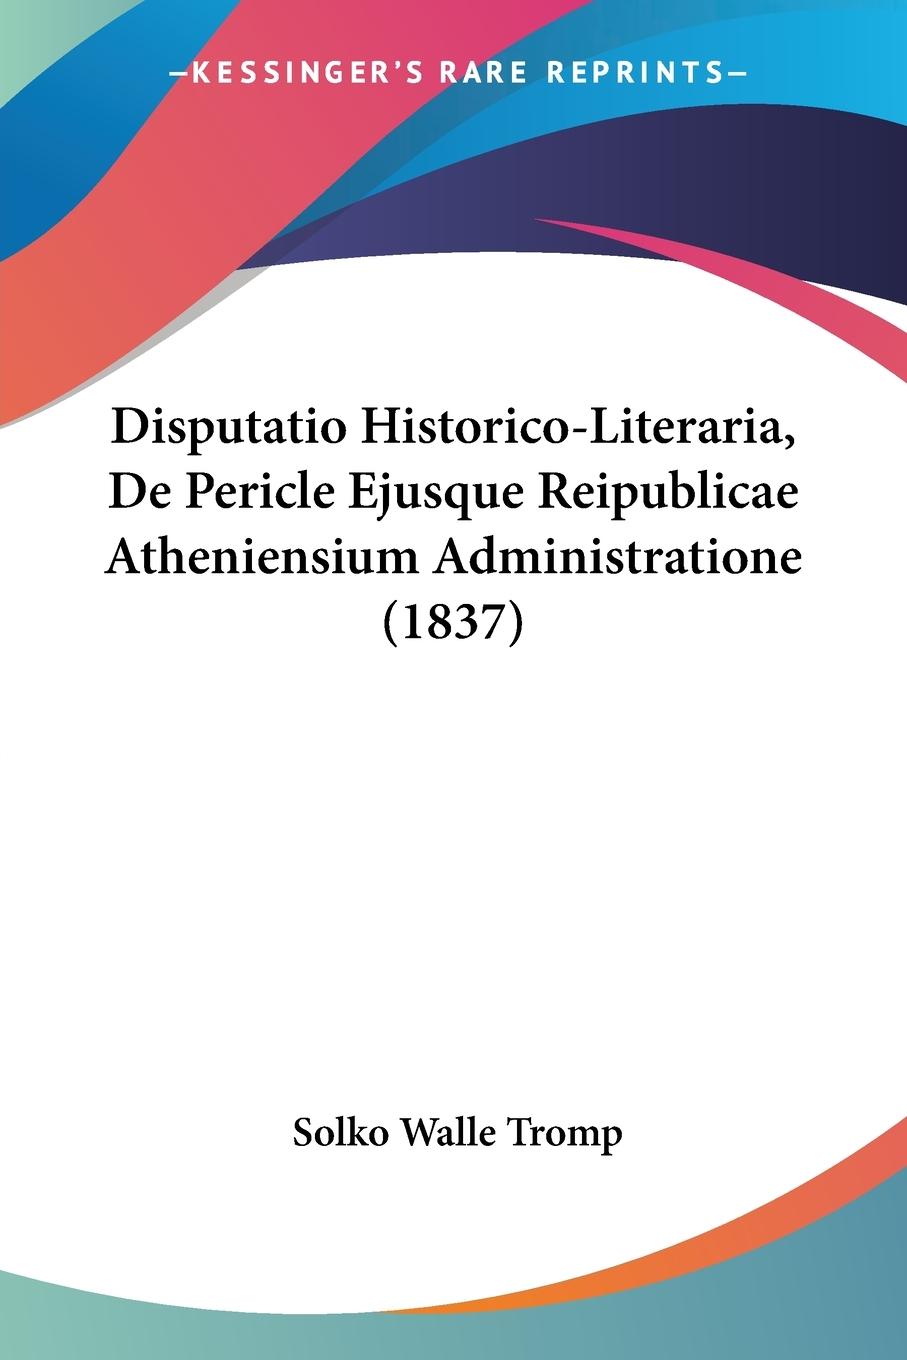 Disputatio Historico-Literaria, De Pericle Ejusque Reipublicae Atheniensium Administratione (1837) - Tromp, Solko Walle